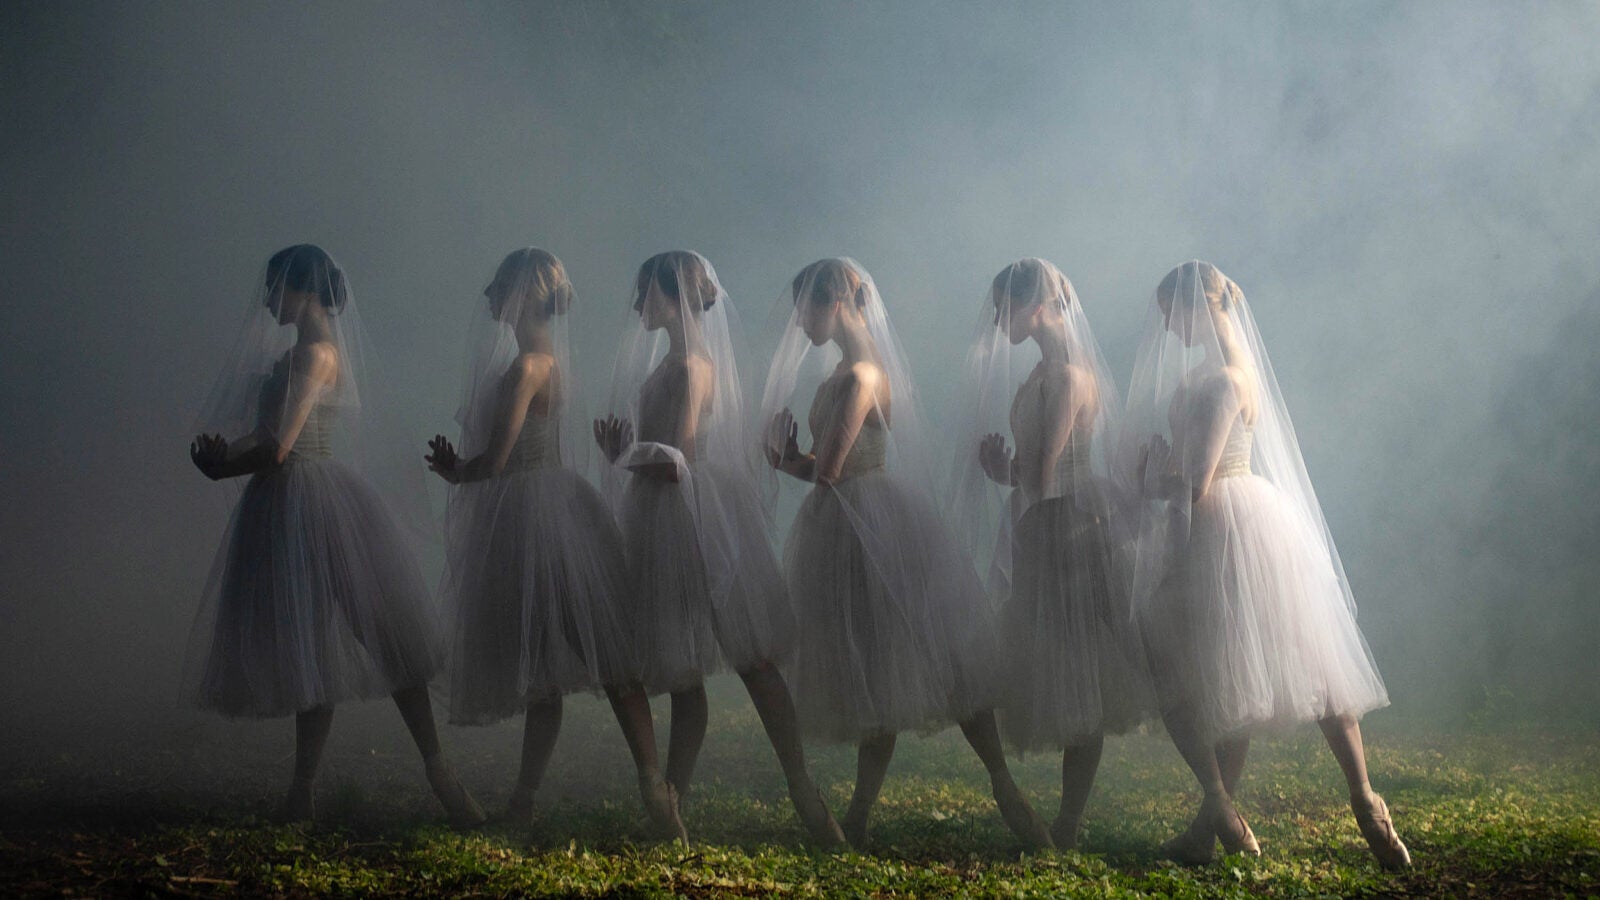 Ballet dancers posed in fog.